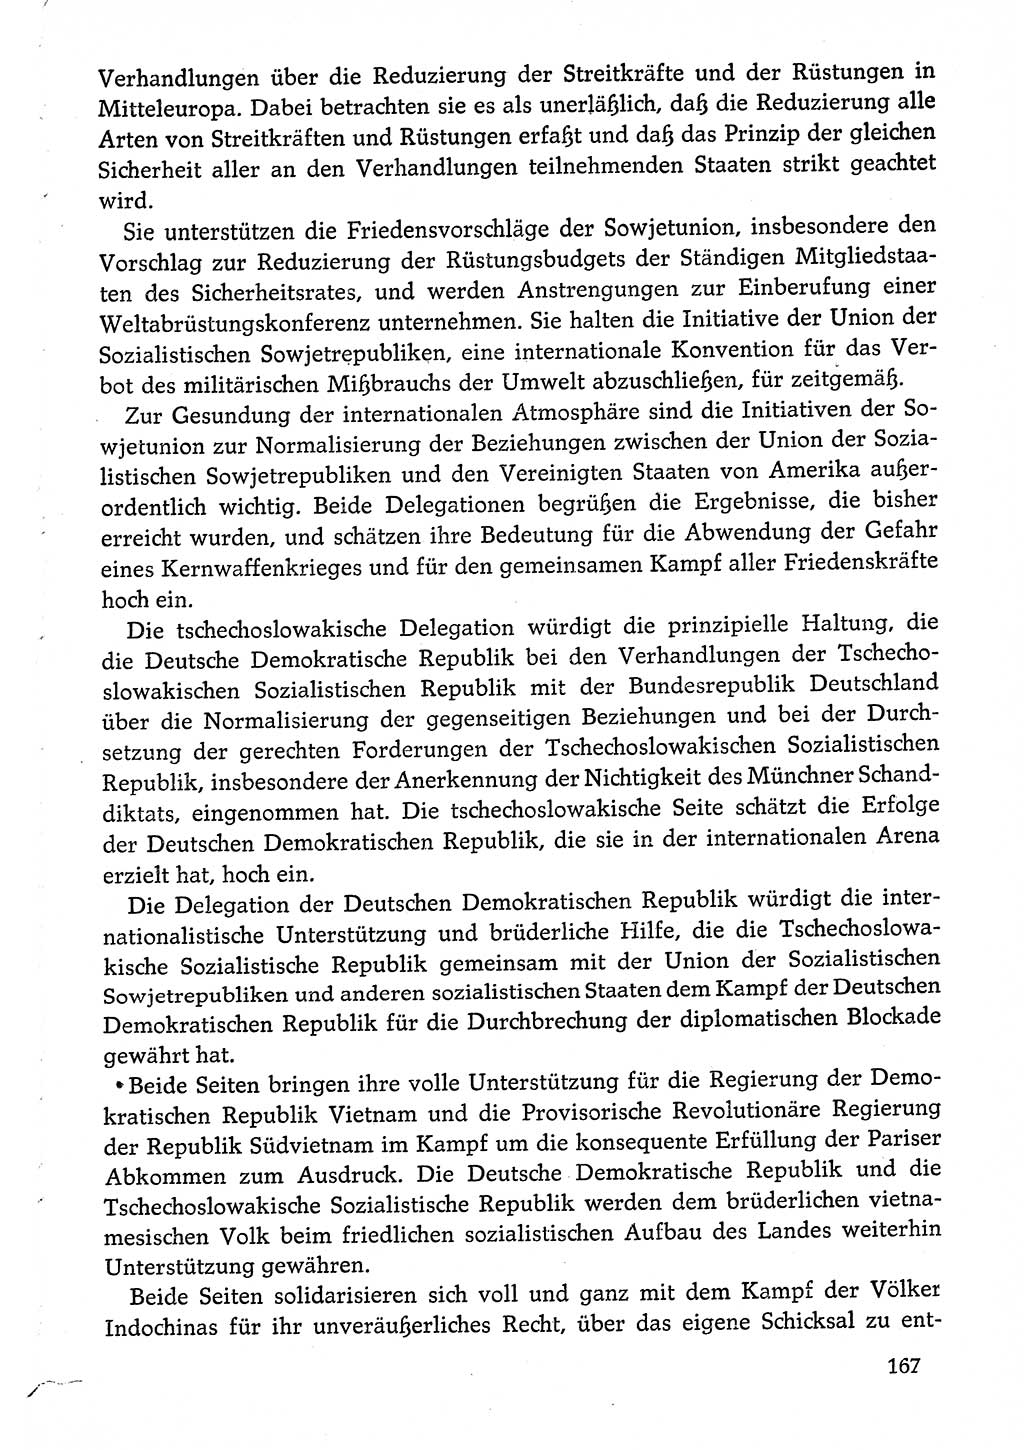 Dokumente der Sozialistischen Einheitspartei Deutschlands (SED) [Deutsche Demokratische Republik (DDR)] 1974-1975, Seite 167 (Dok. SED DDR 1978, Bd. ⅩⅤ, S. 167)